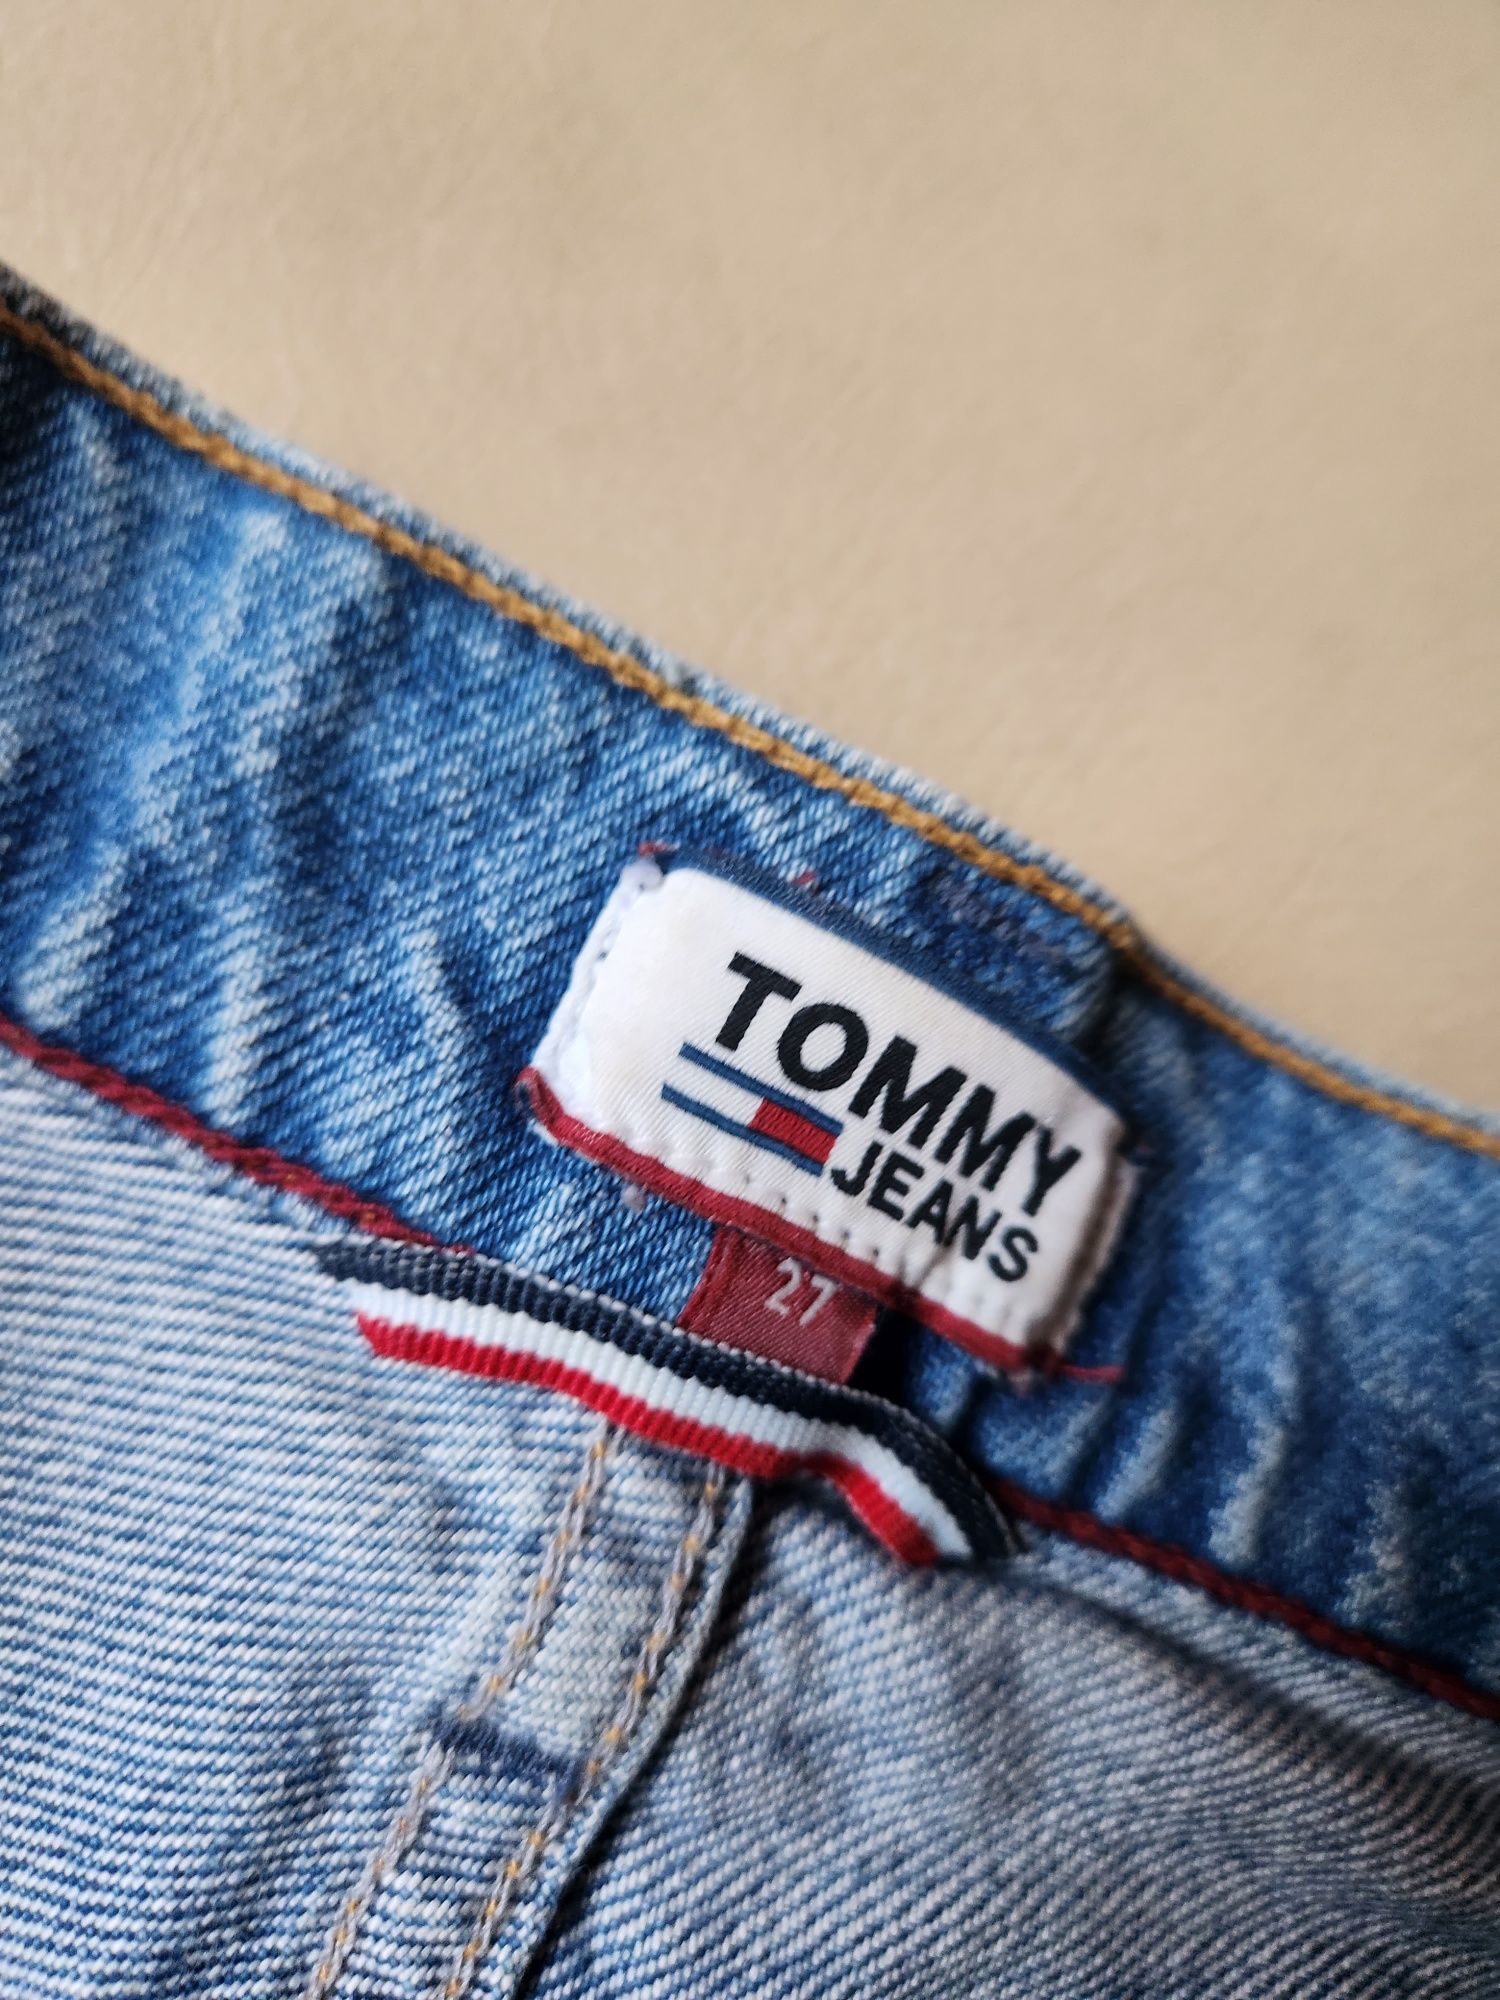 Krótkie spodenki szorty jeansowe damskie Tommy Hilfiger roz 27 S- M